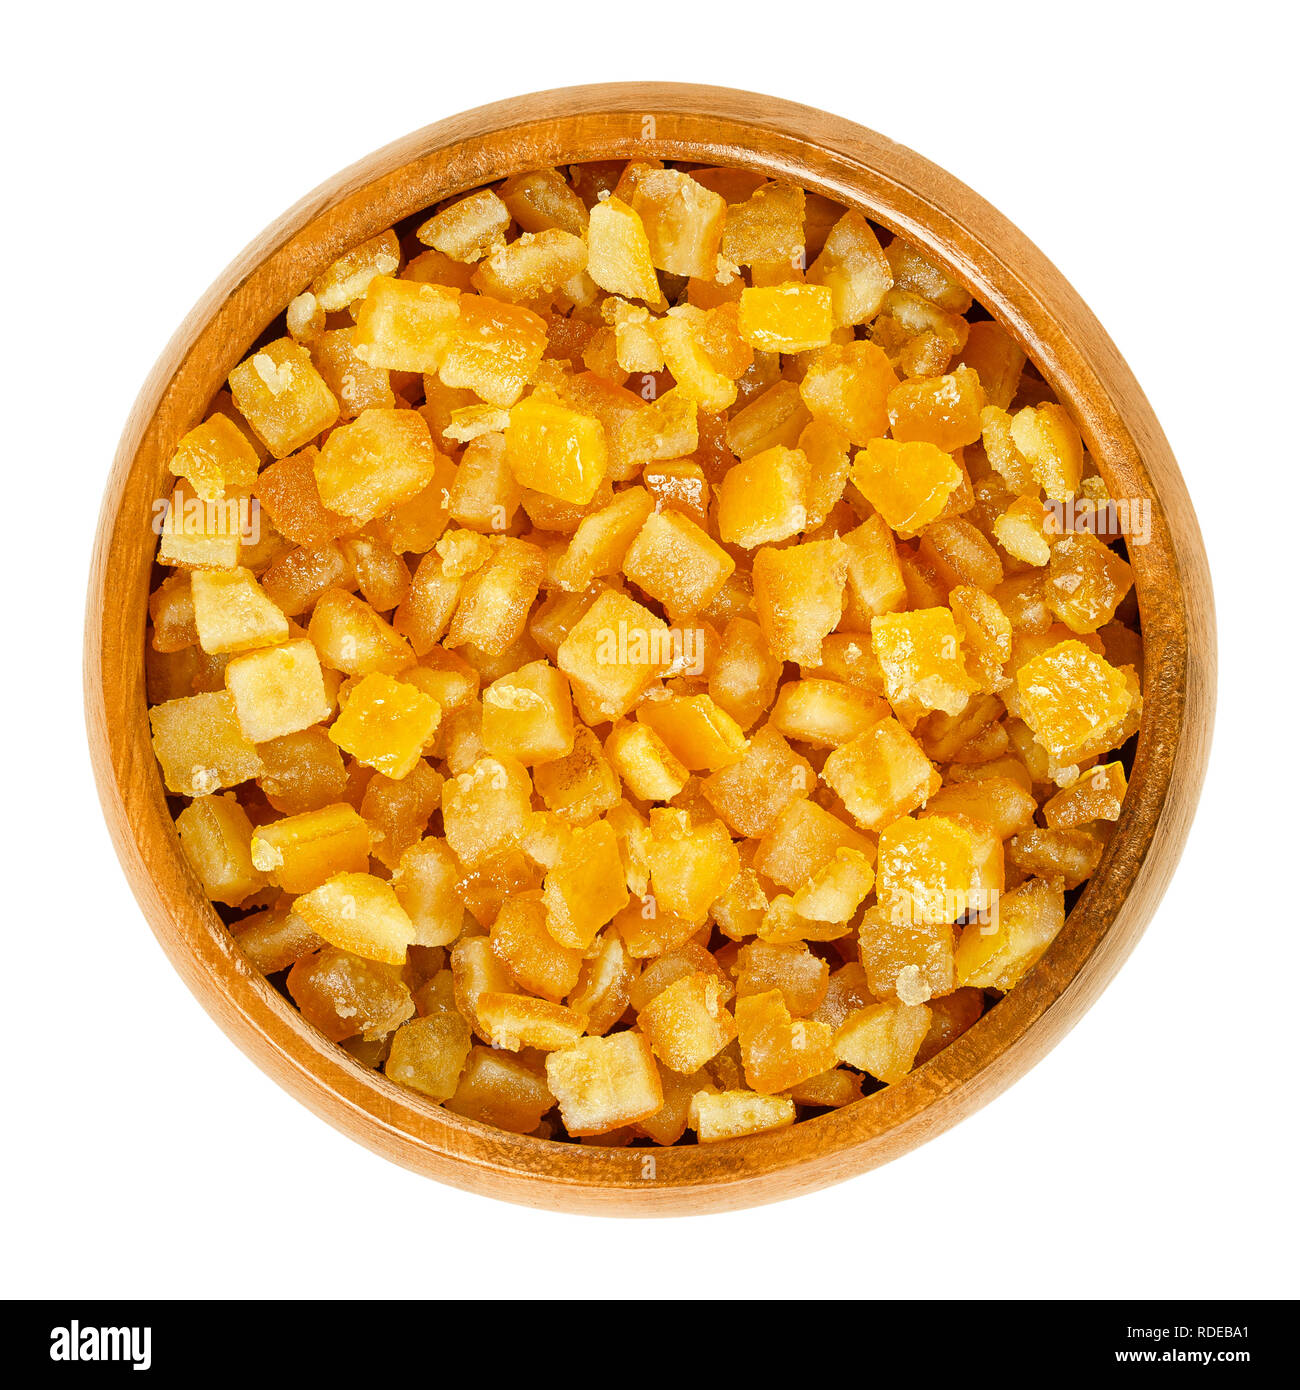 Arancia candita in ciotola di legno. Tagliate a dadini, conservate e cristallizzato scorze di arance in sciroppo di zucchero, spesso usato in torte come riempimento. Foto Stock